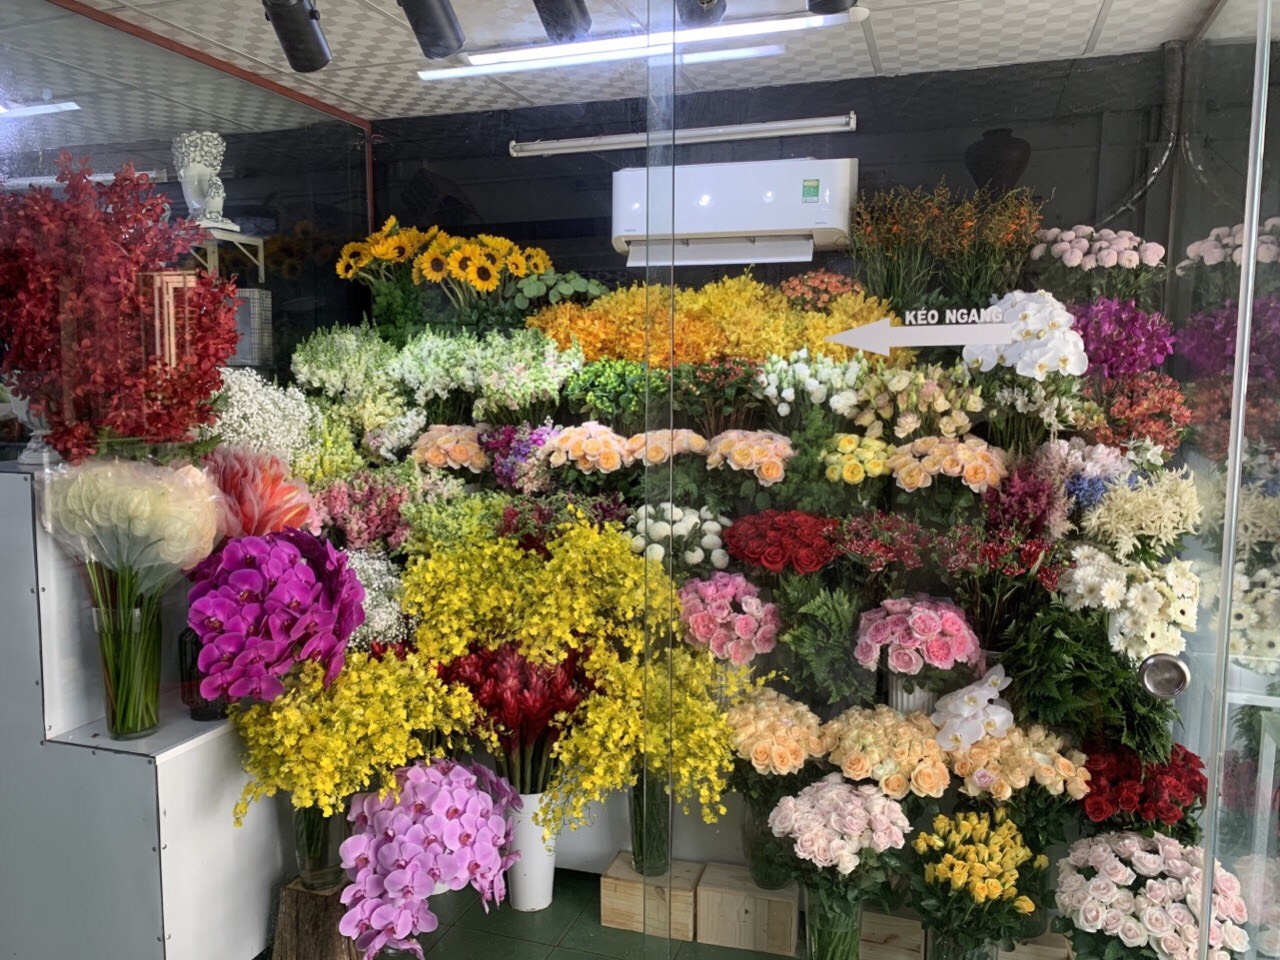 SHOP HOA TƯƠI CHỢ BẾN THÀNH QUẬN 1 TPHCM Nơi tìm kiếm những bông hoa đẹp nhất